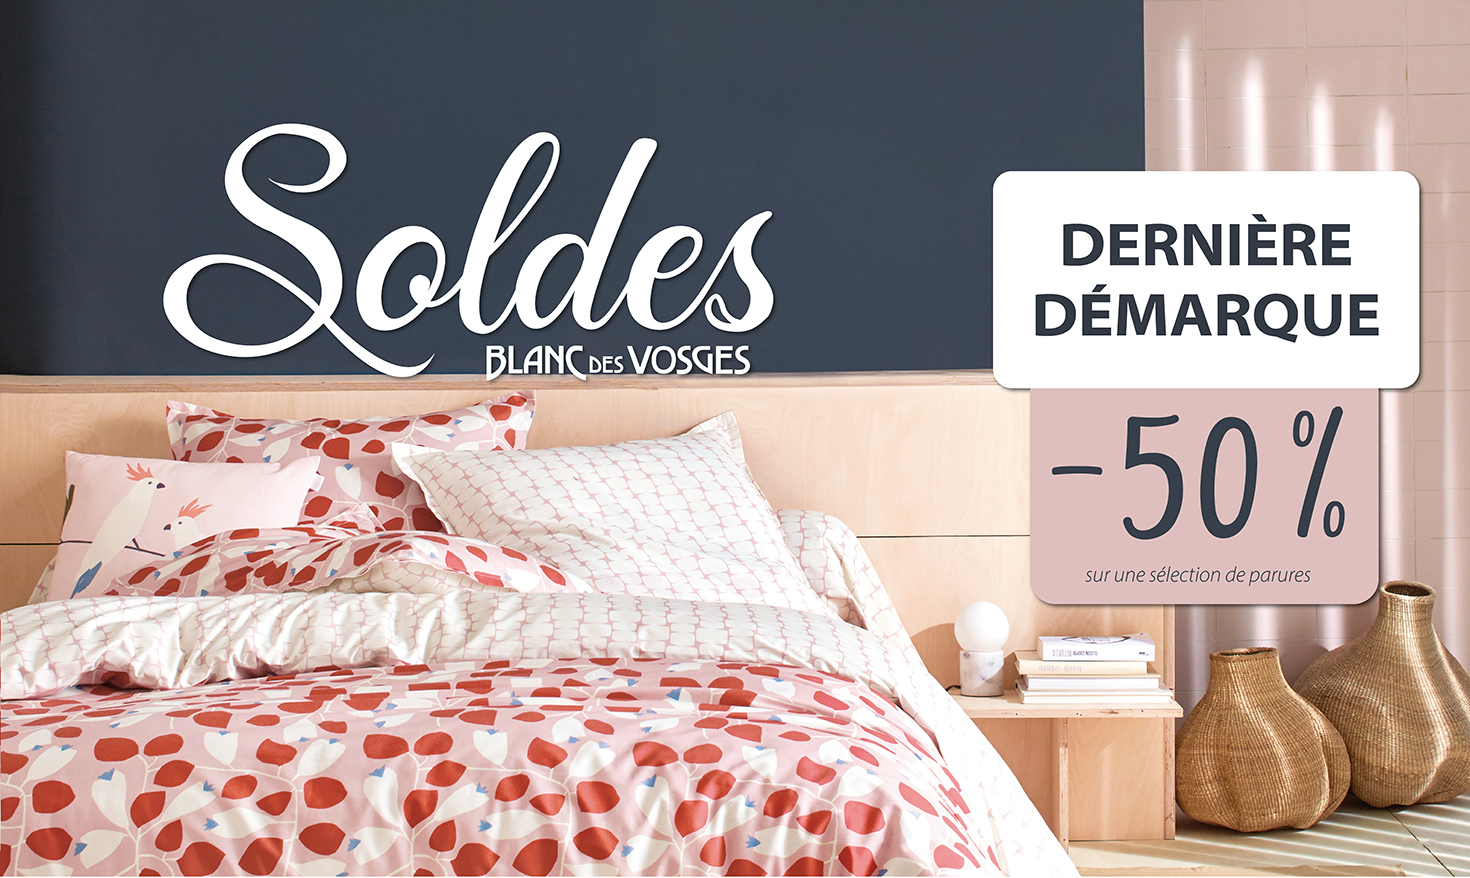 Soldes - Promotion Blanc des Vosges et Scion Living corporate